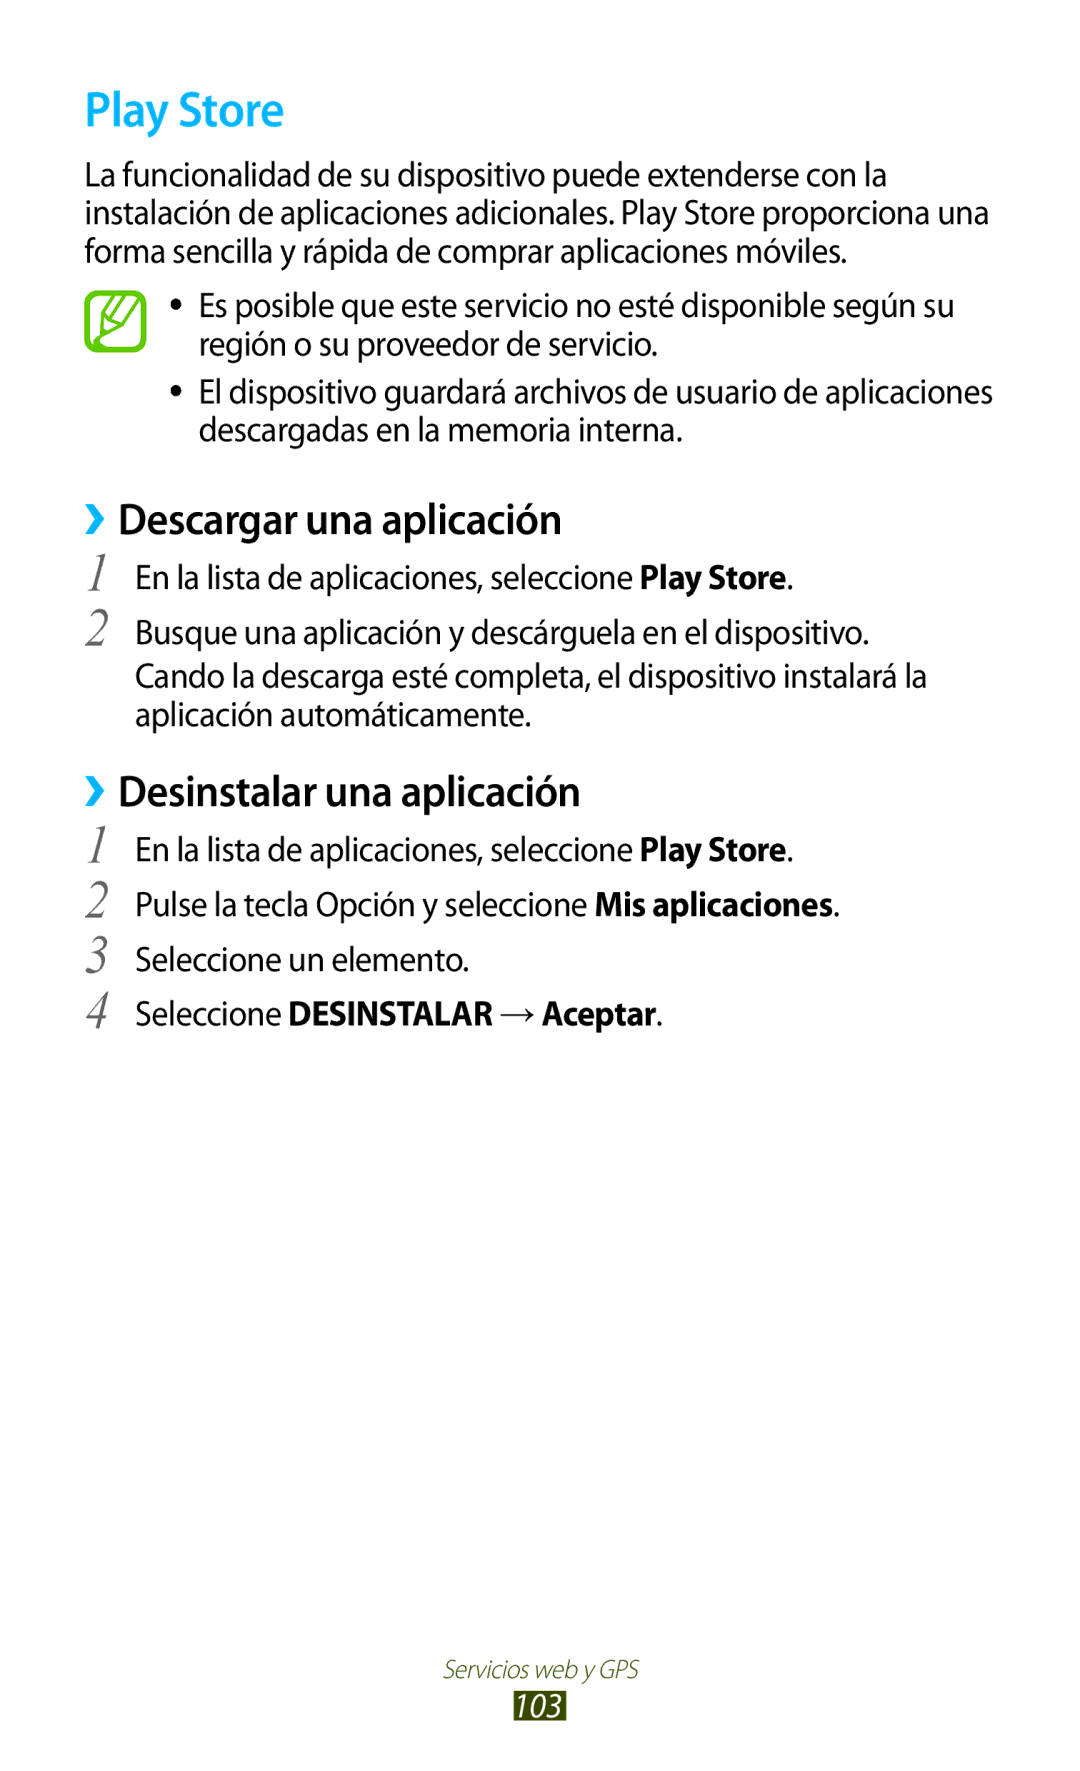 Samsung GT-S7560UWAYOG, GT-S7560ZKAXEO manual Play Store, ››Descargar una aplicación, Seleccione Desinstalar → Aceptar 